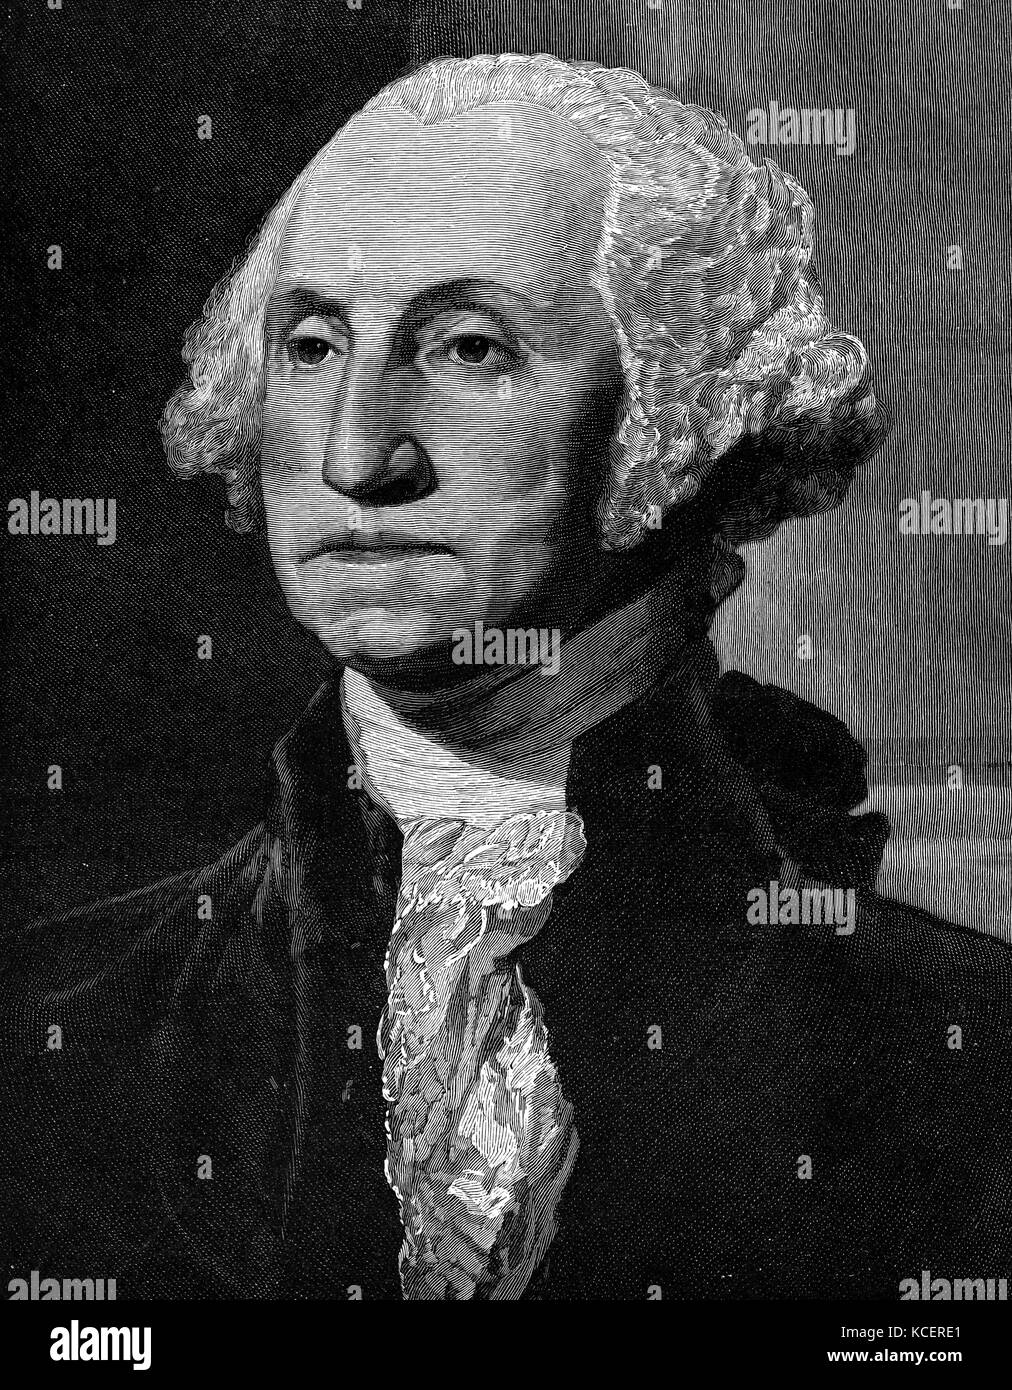 Porträt von George Washington (1732-1799) ein US-amerikanischer Politiker, Soldaten und der erste Präsident der Vereinigten Staaten von Amerika. Von Gilbert Stuart (1755-1828) ein US-amerikanischer Maler gemalt. Vom 18. Jahrhundert Stockfoto